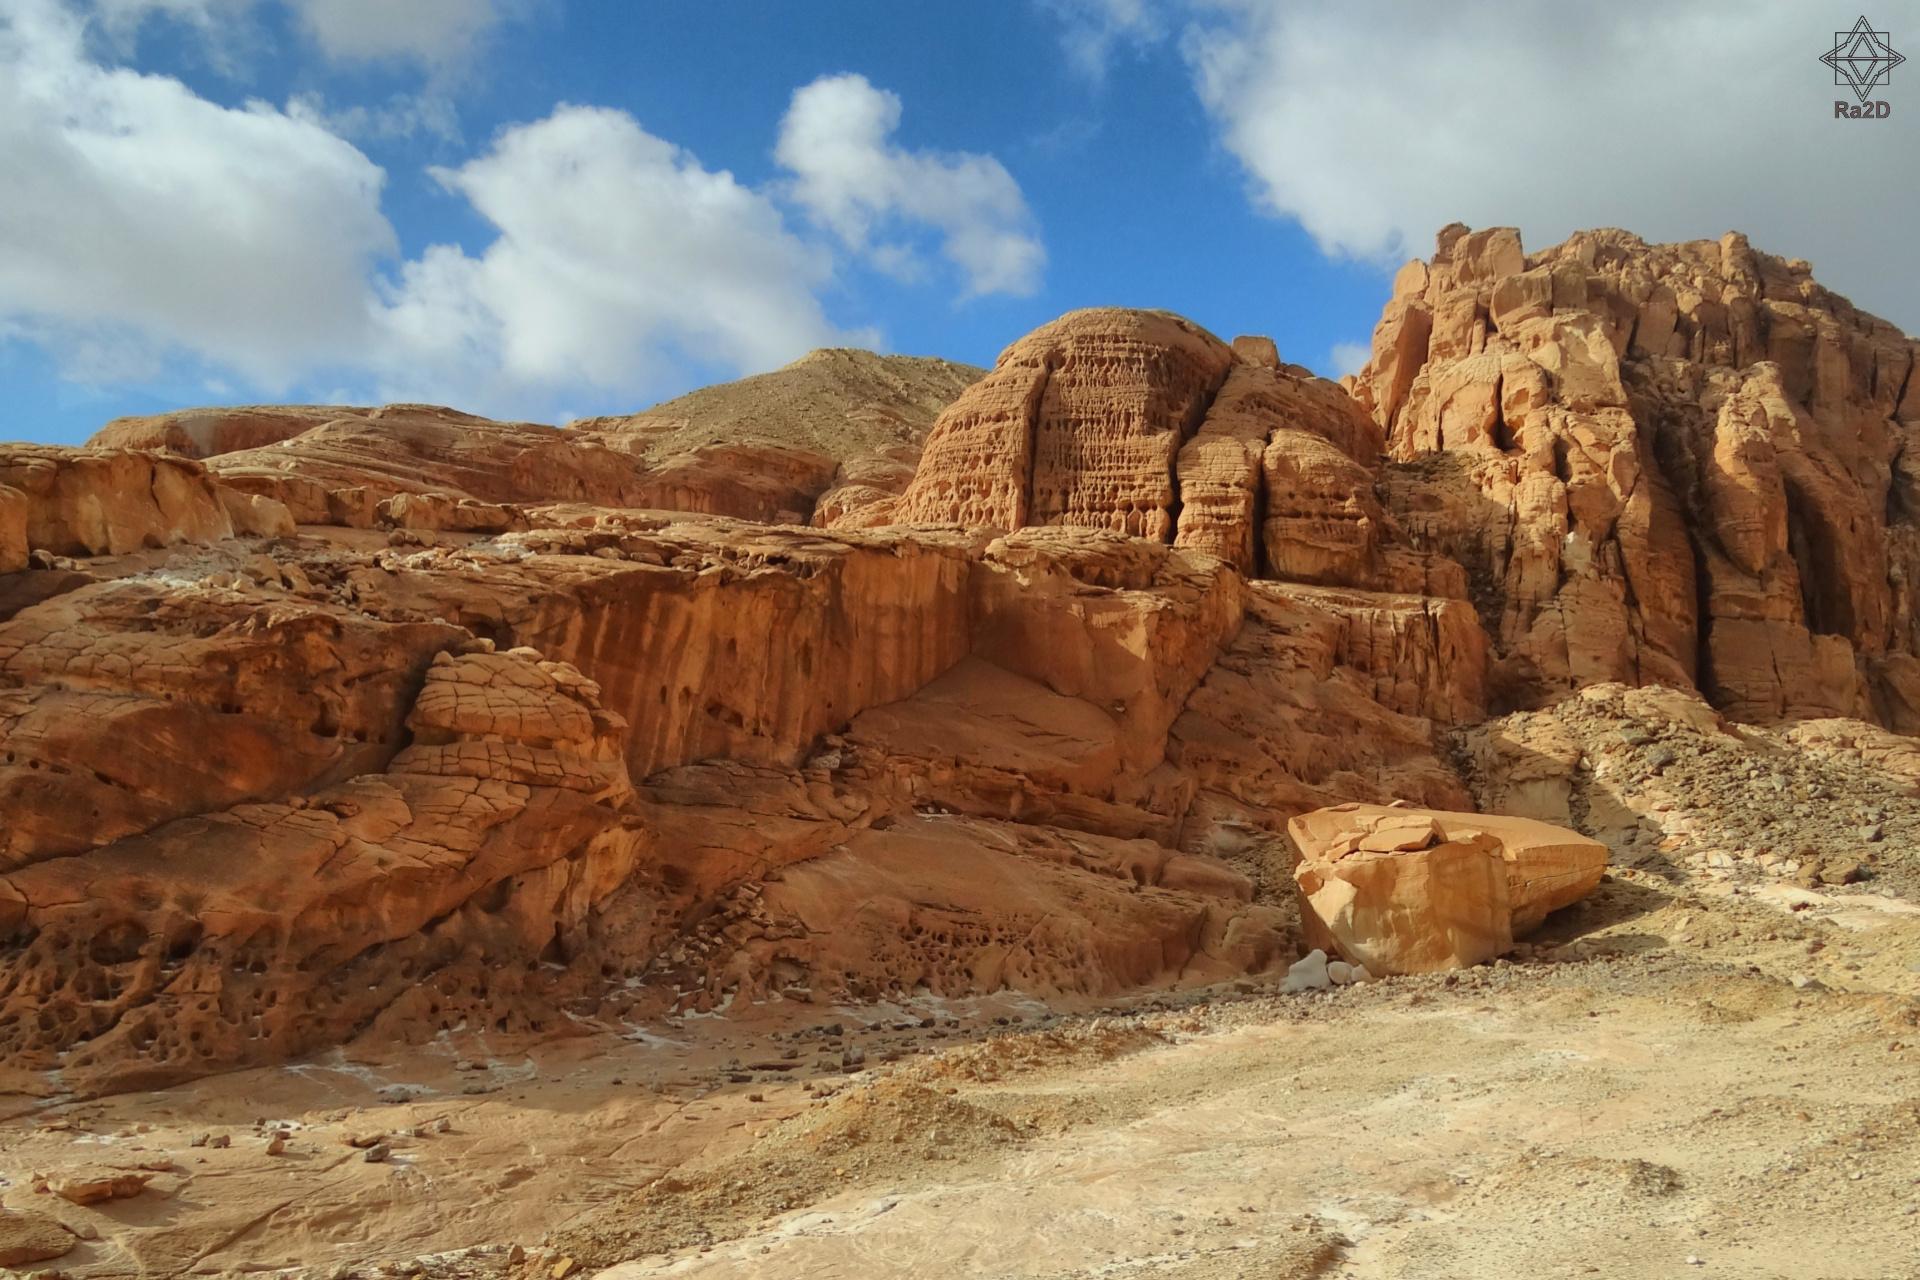 Egypt Sinai Mountain Ra2D 01